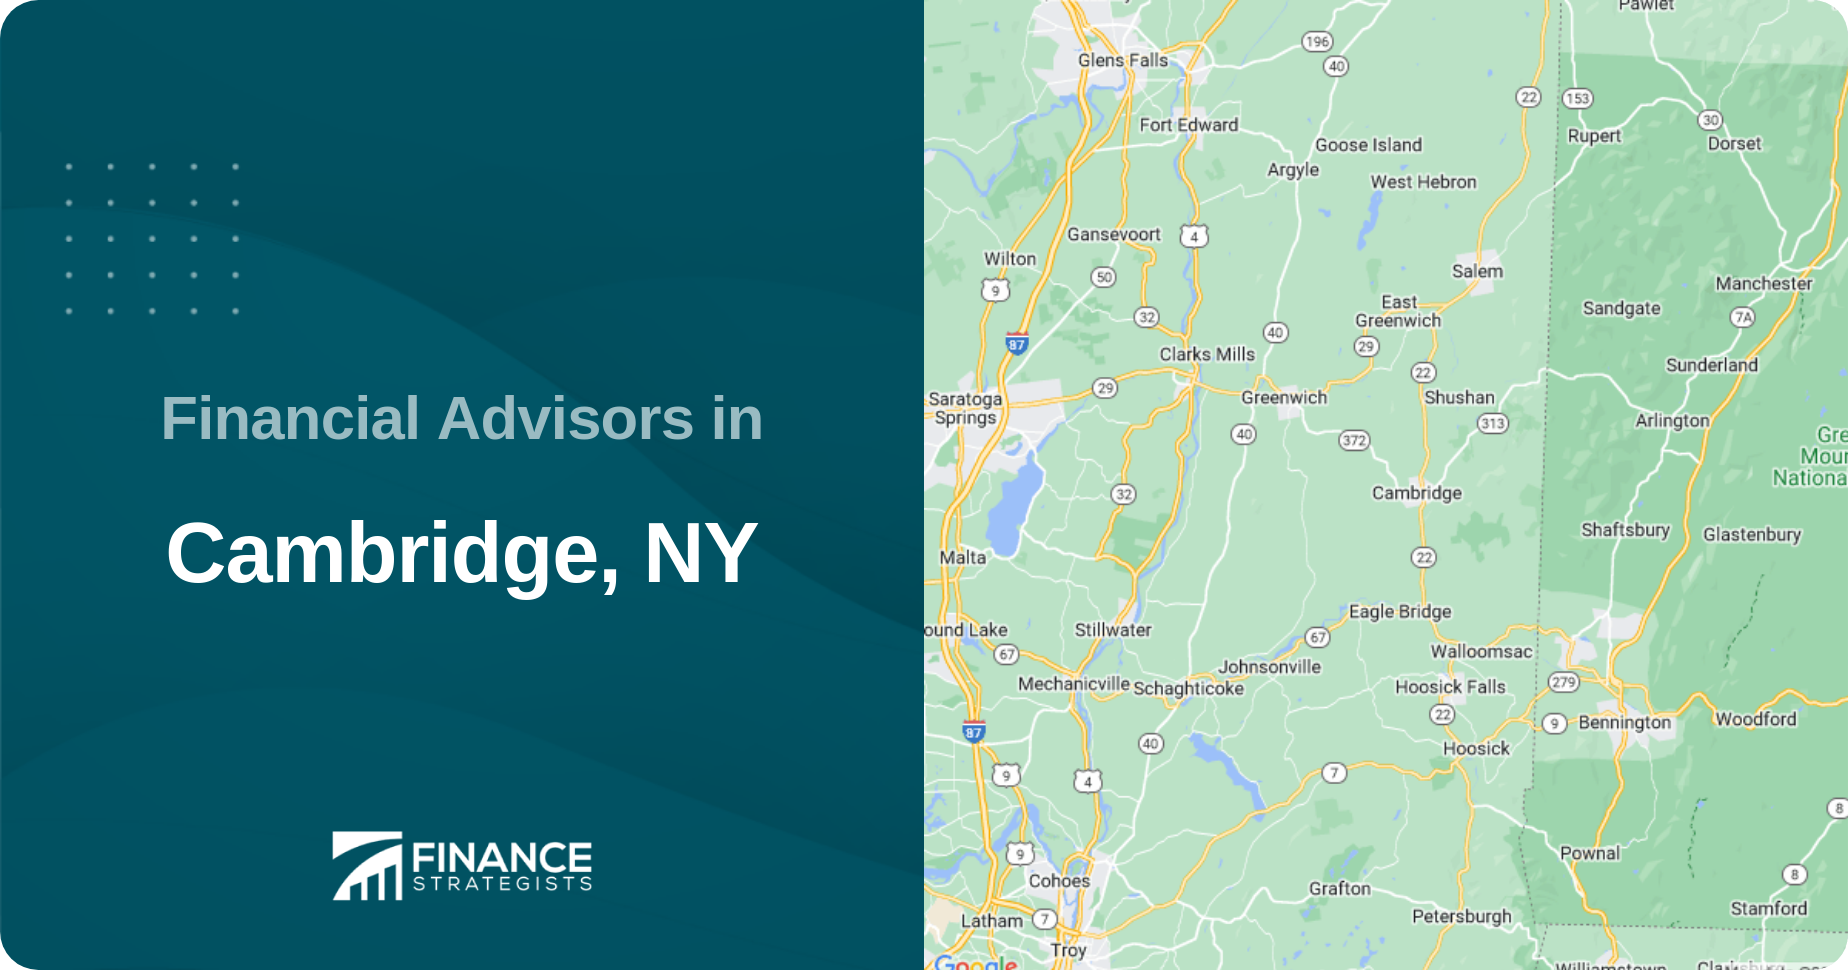 Financial Advisors in Cambridge, NY